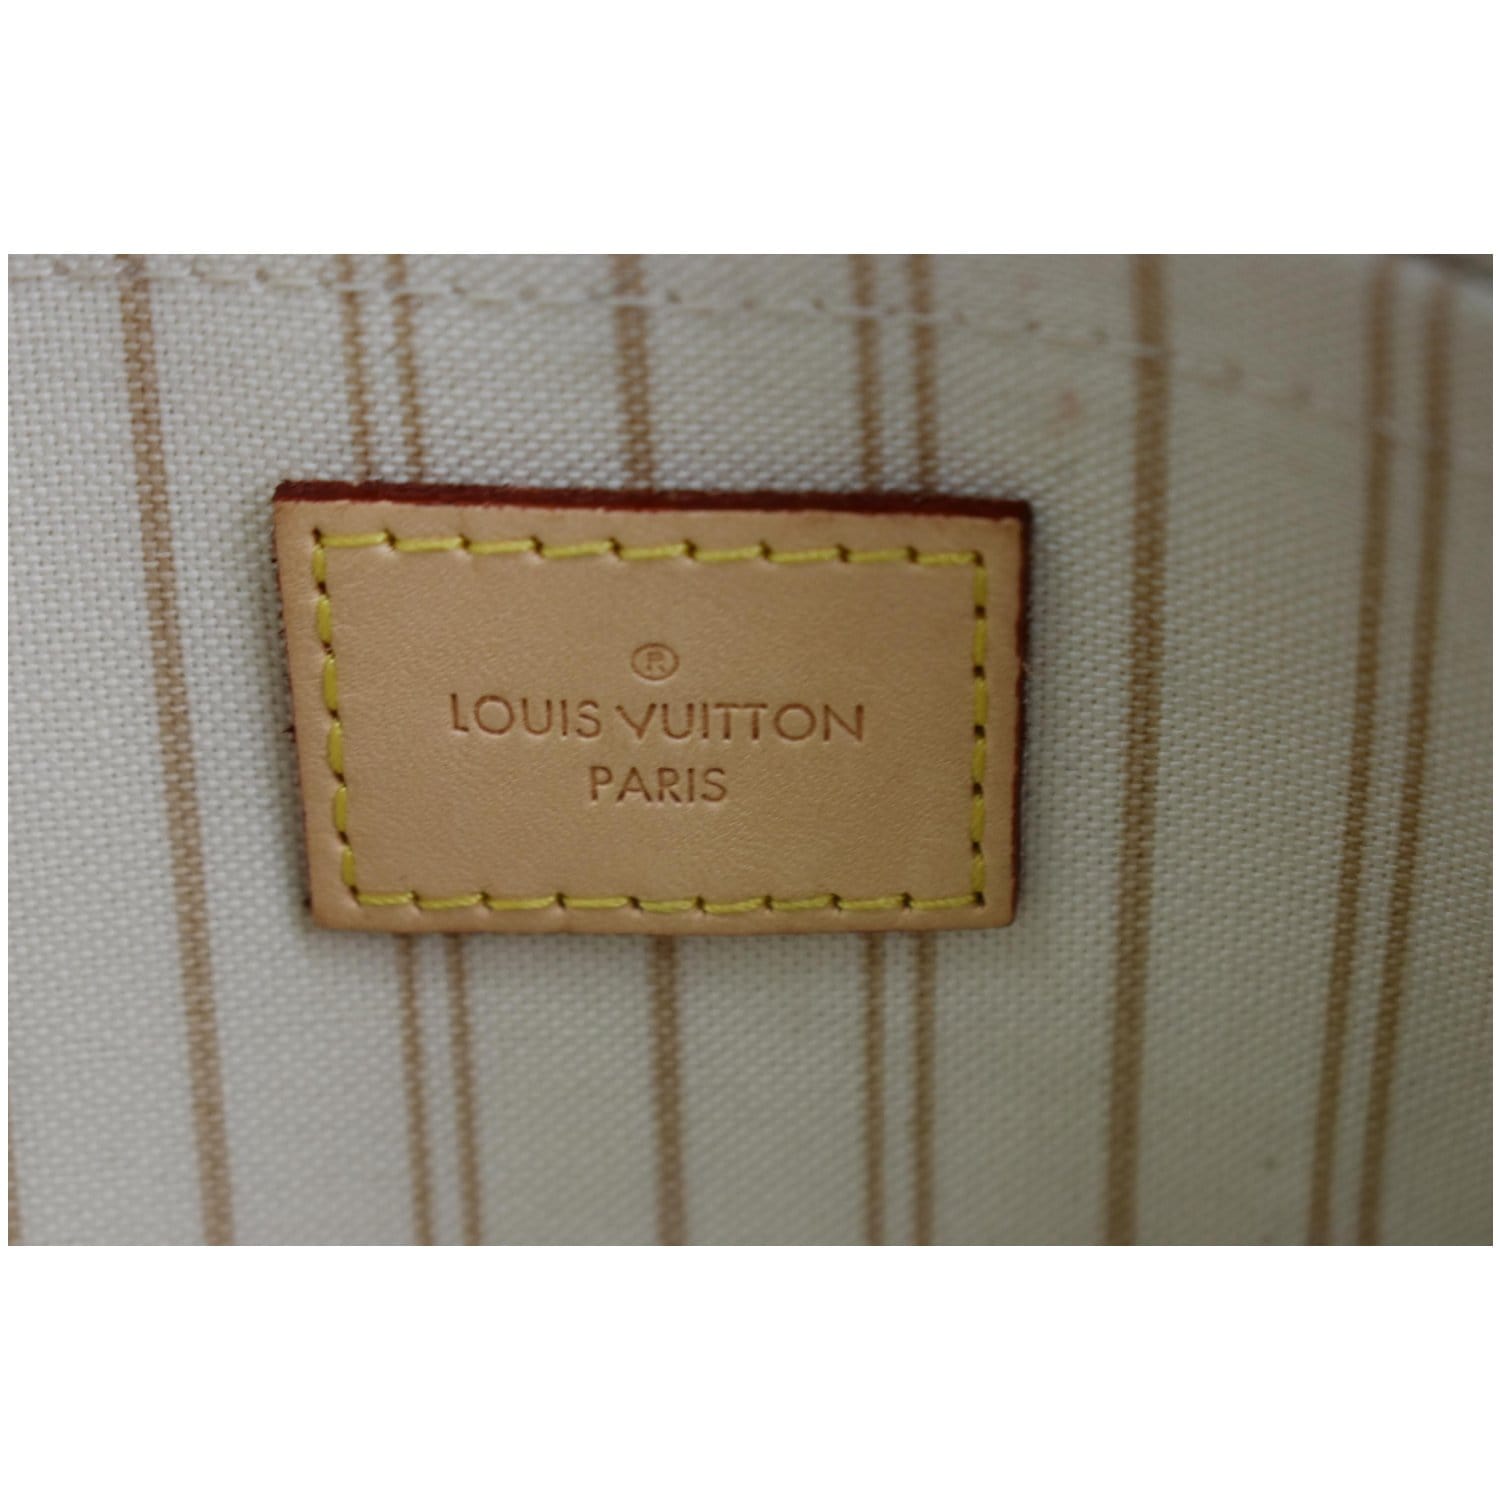 Louis Vuitton Damier Azur Neverfull Pouch Insert Clutch – I MISS